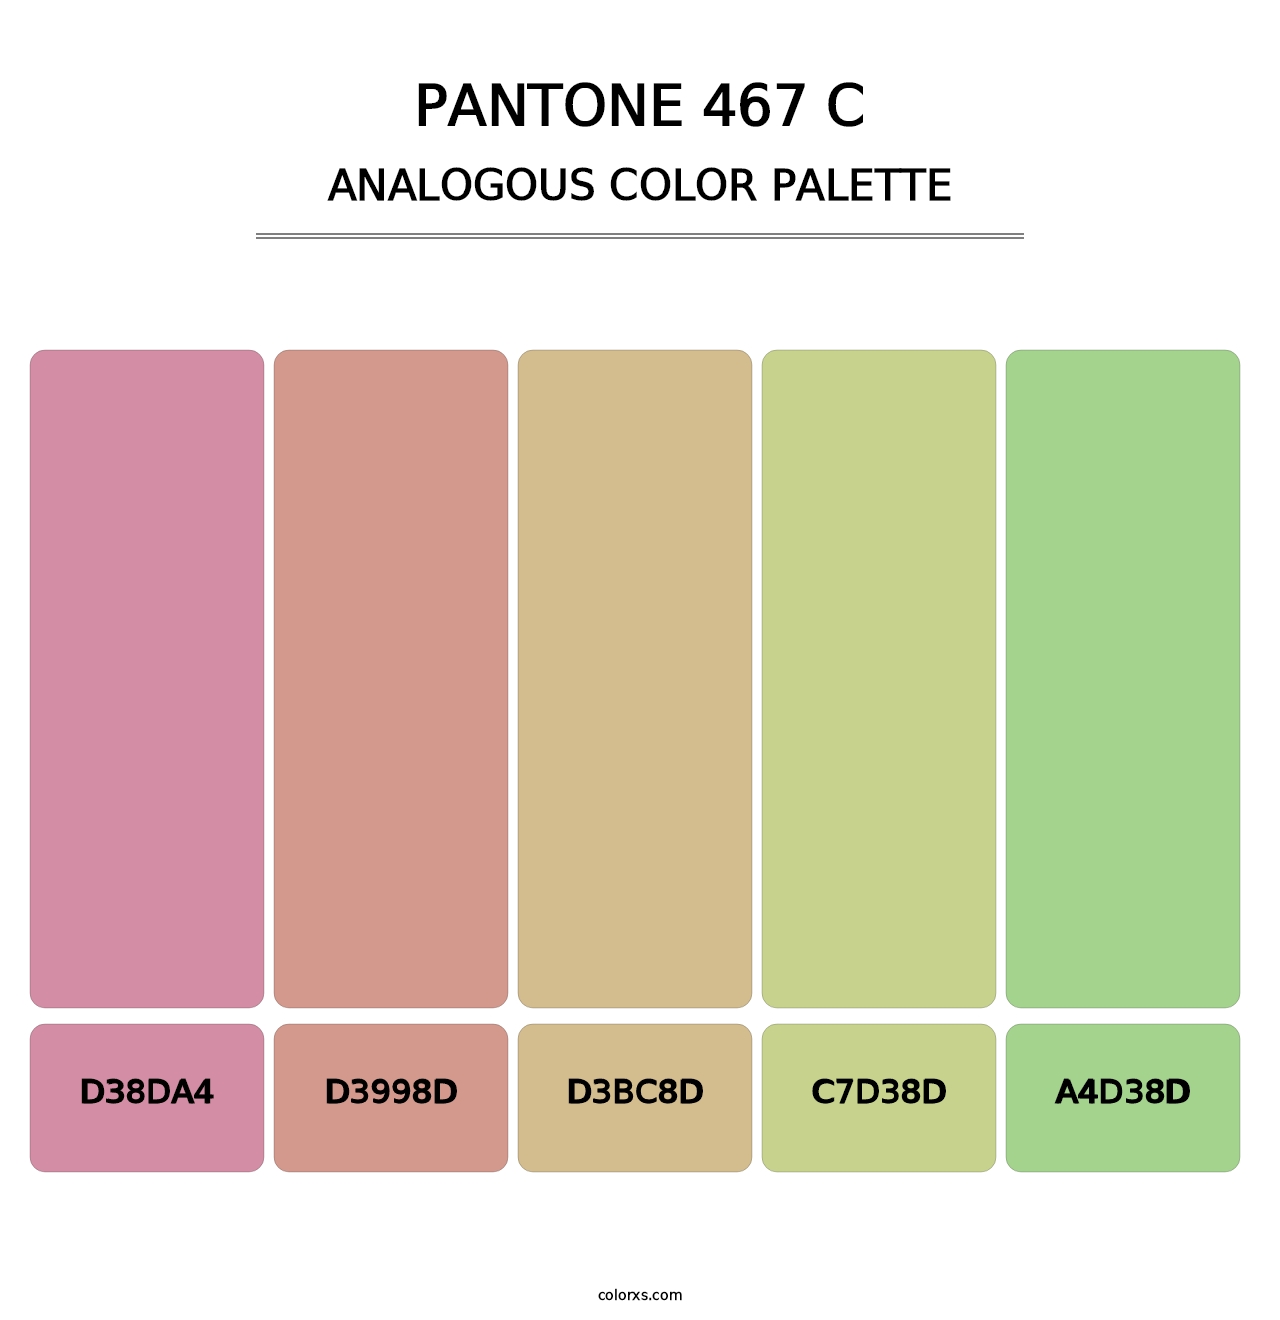 PANTONE 467 C - Analogous Color Palette